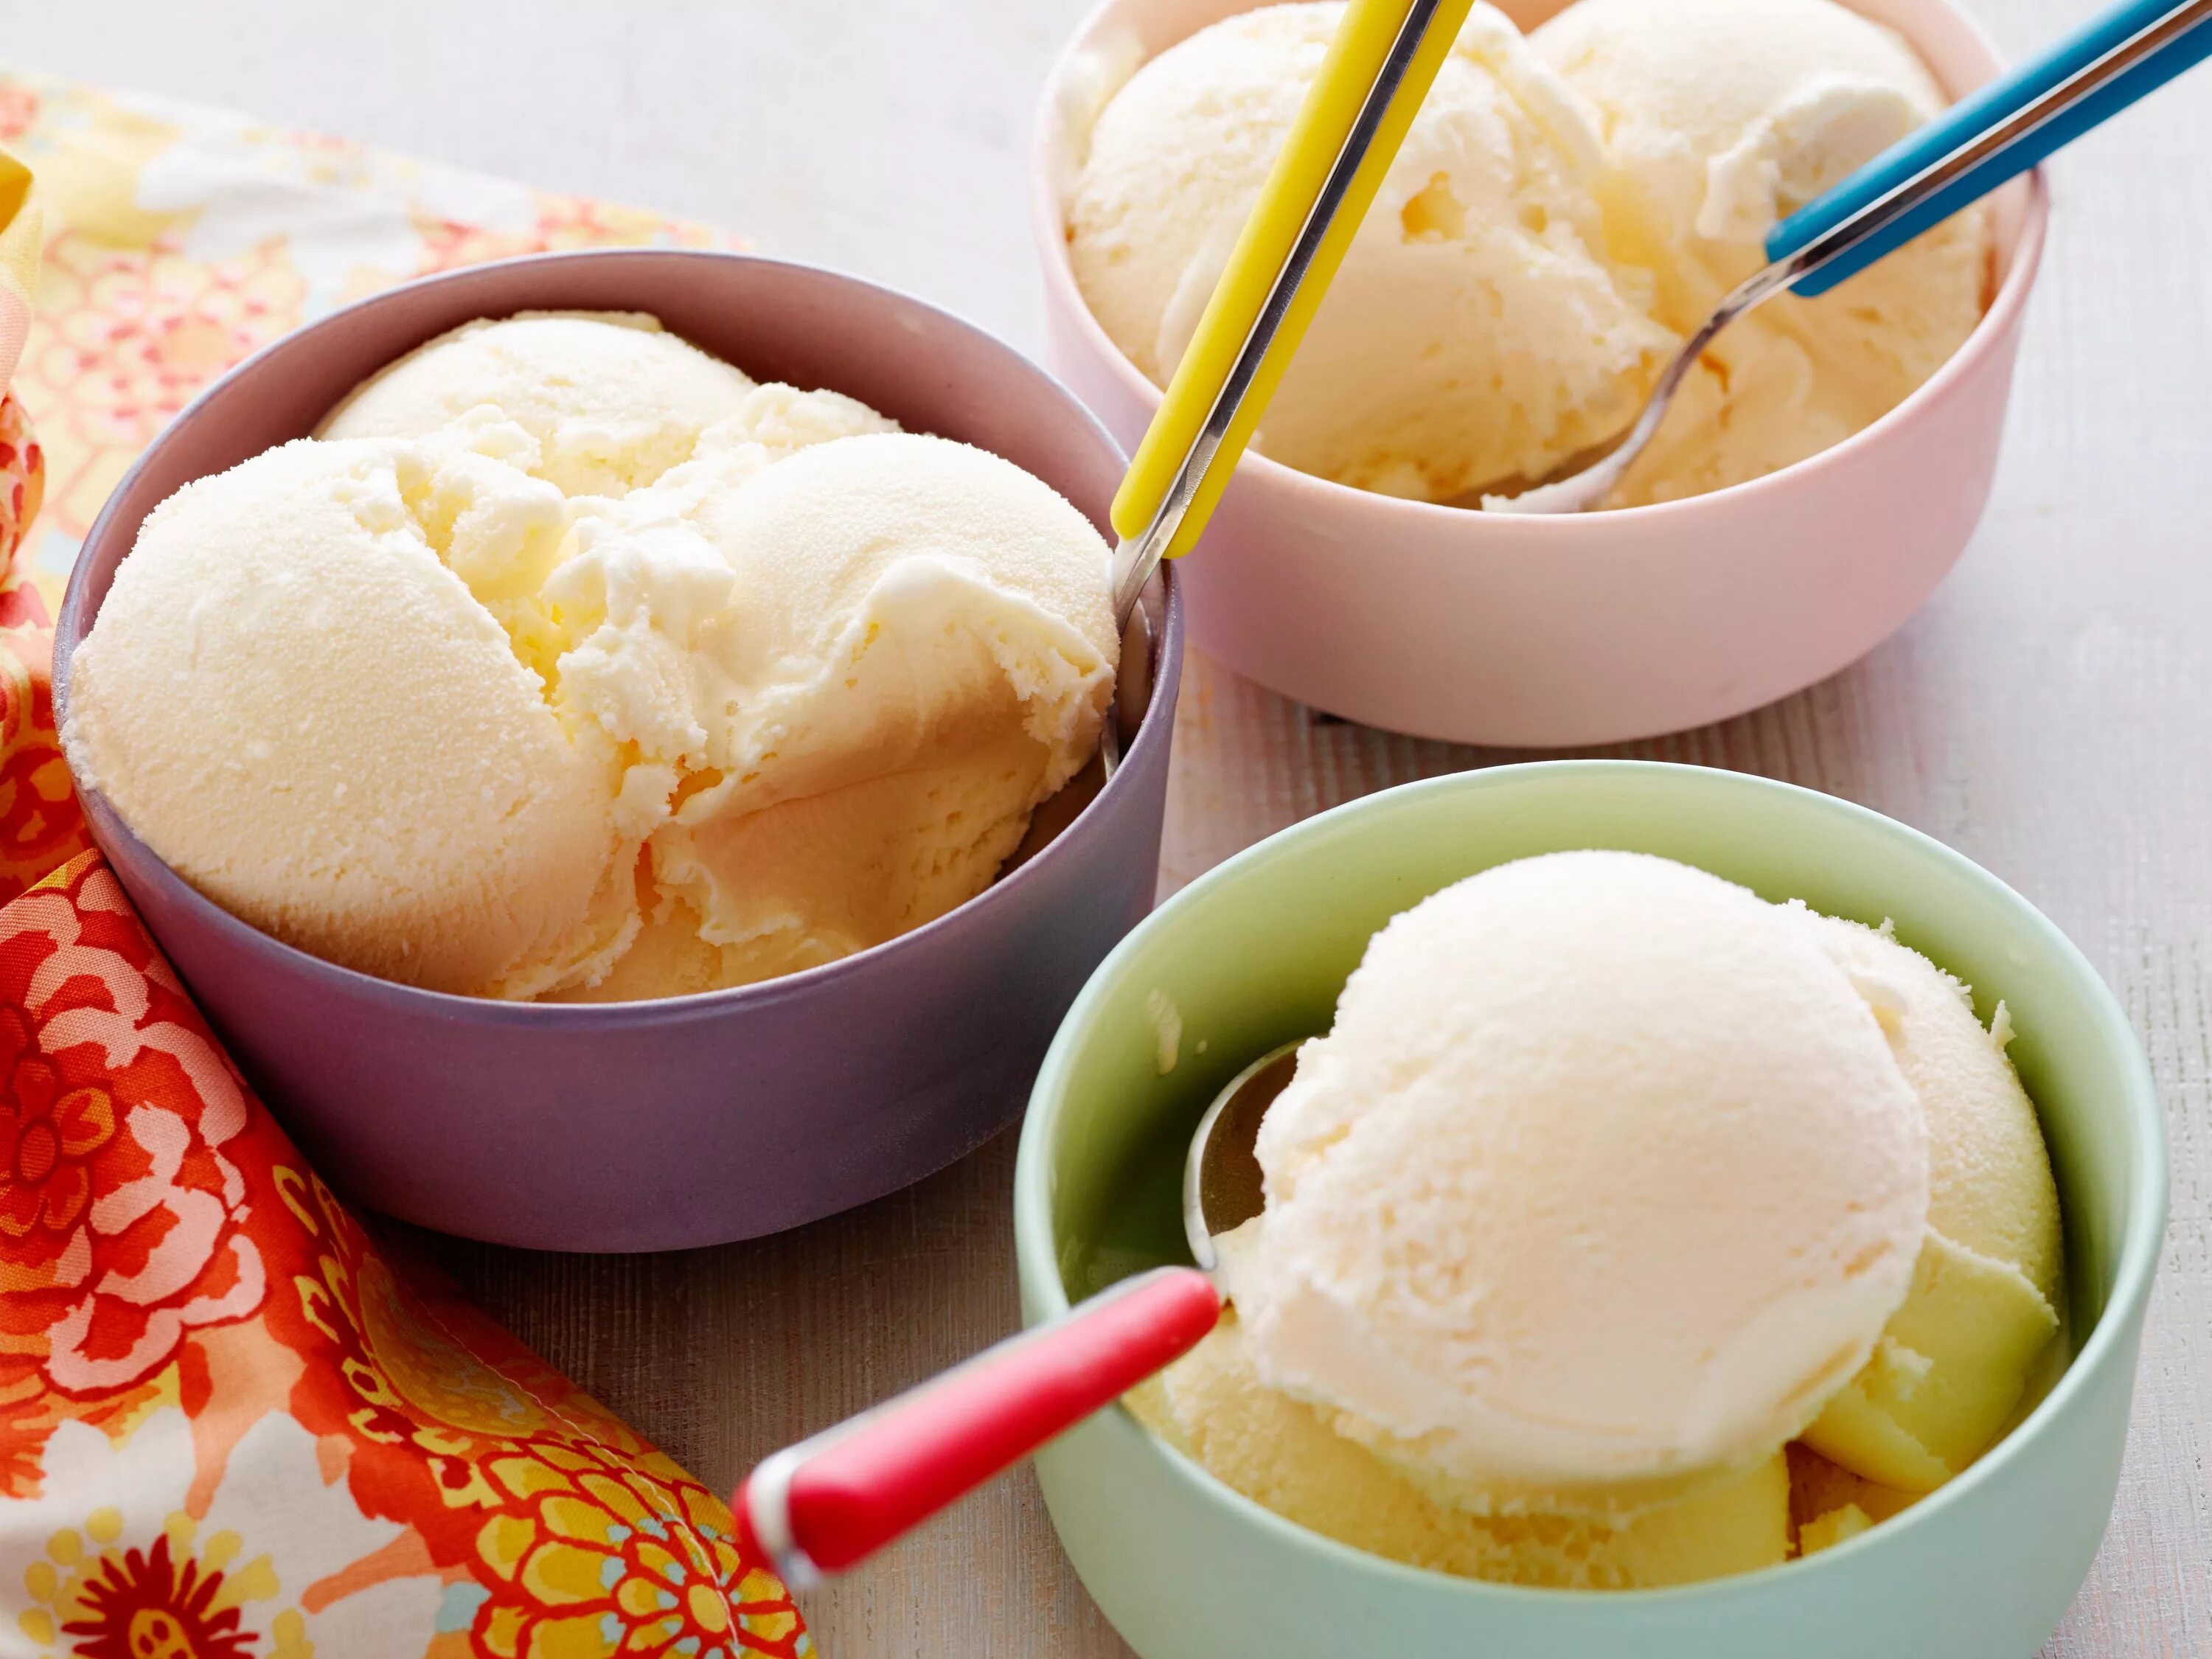 Пломбир сливочное молочное мороженое. Домашнее мороженое. Ванильное мороженое. Мороженое ваниль. Как делать айс